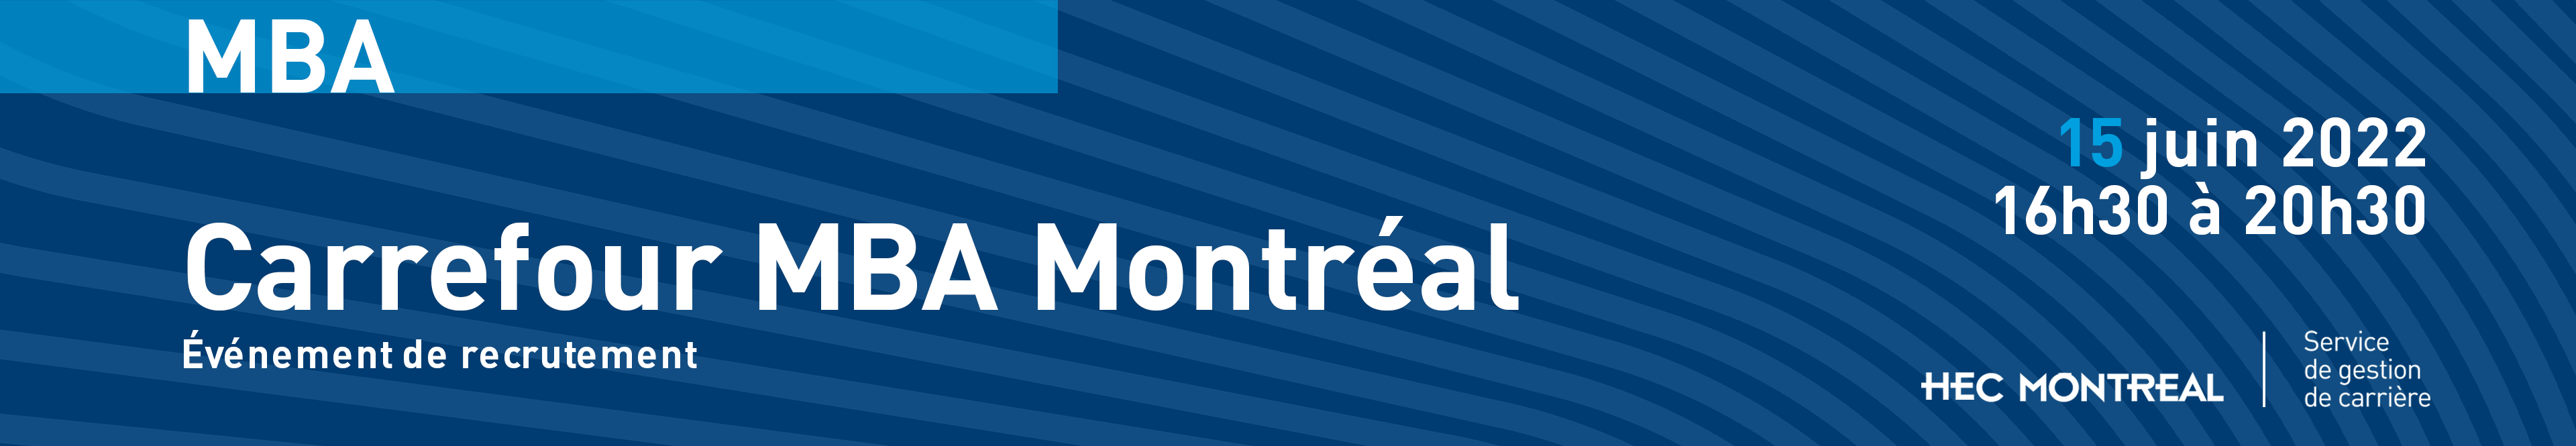 Bannière-Carrefour-MBA-Montréal-2022